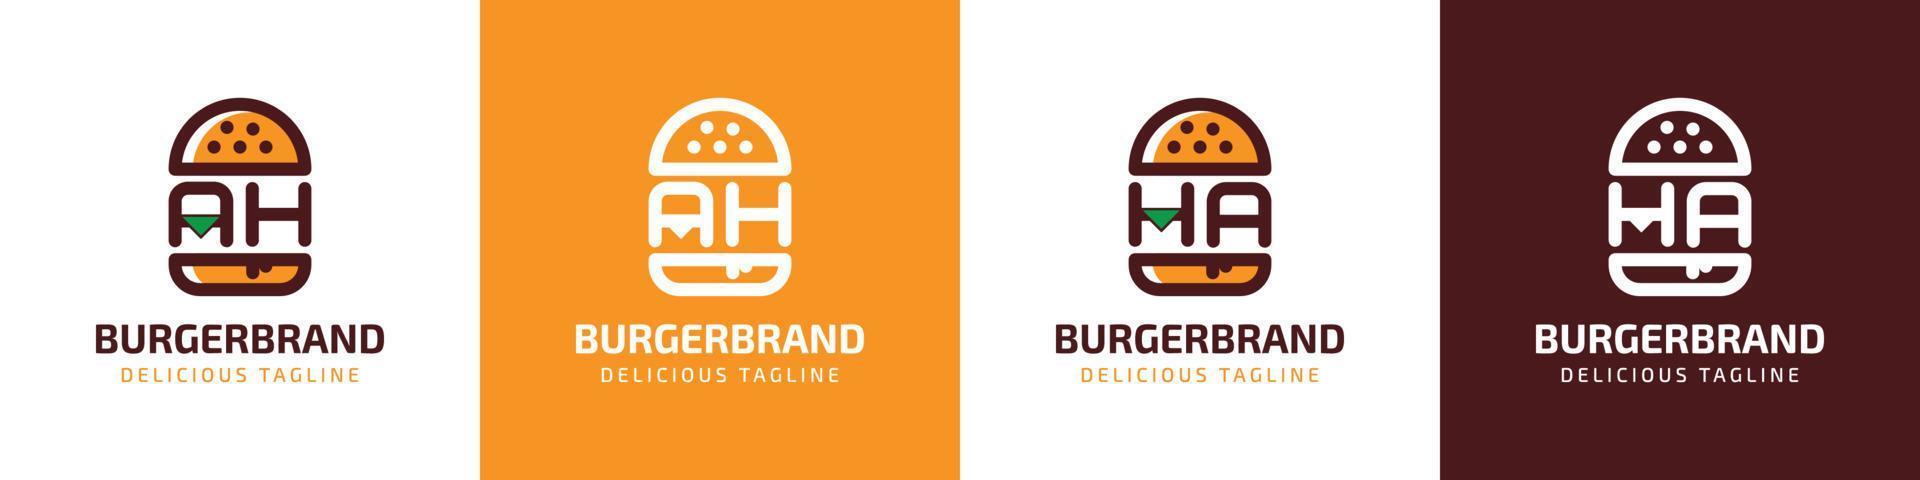 letras ah e ha logotipo do hambúrguer, adequado para qualquer negócio relacionado a hambúrguer com as iniciais ah ou ha. vetor